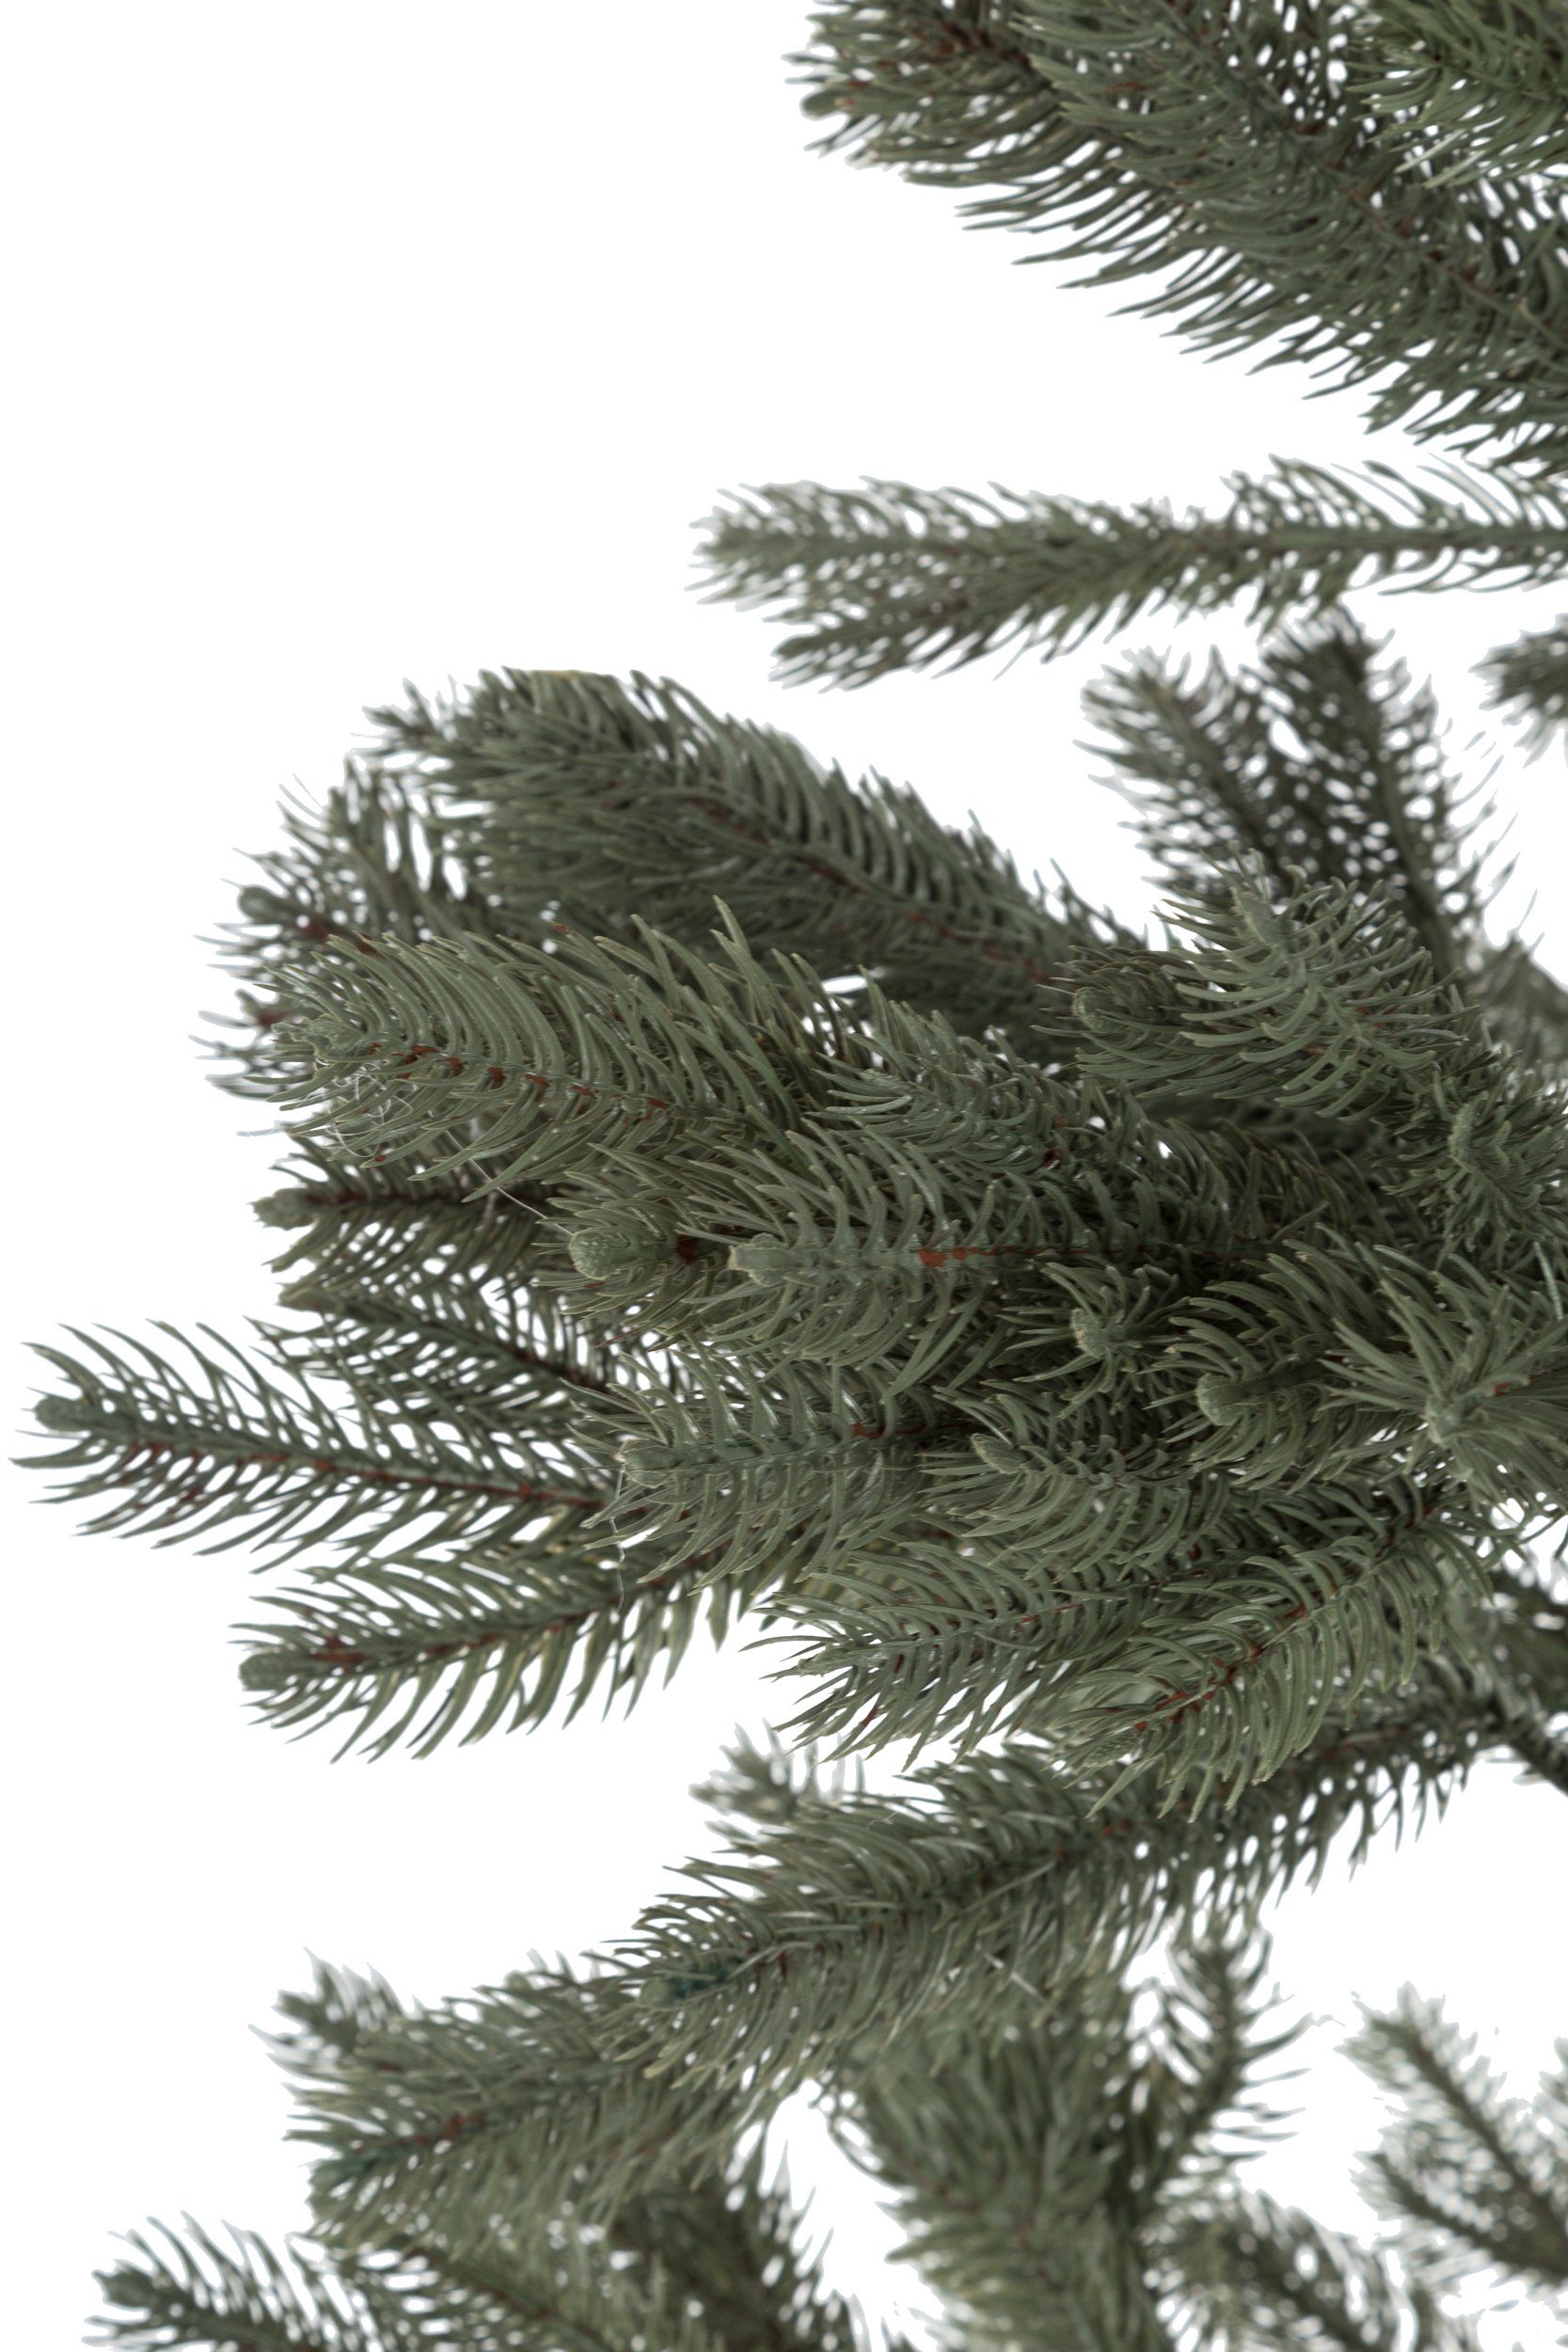 763 Äste Tannenbaum-Alternative 180cm, Künstlicher Wohnando Weihnachtsbaum Design realistischem mit